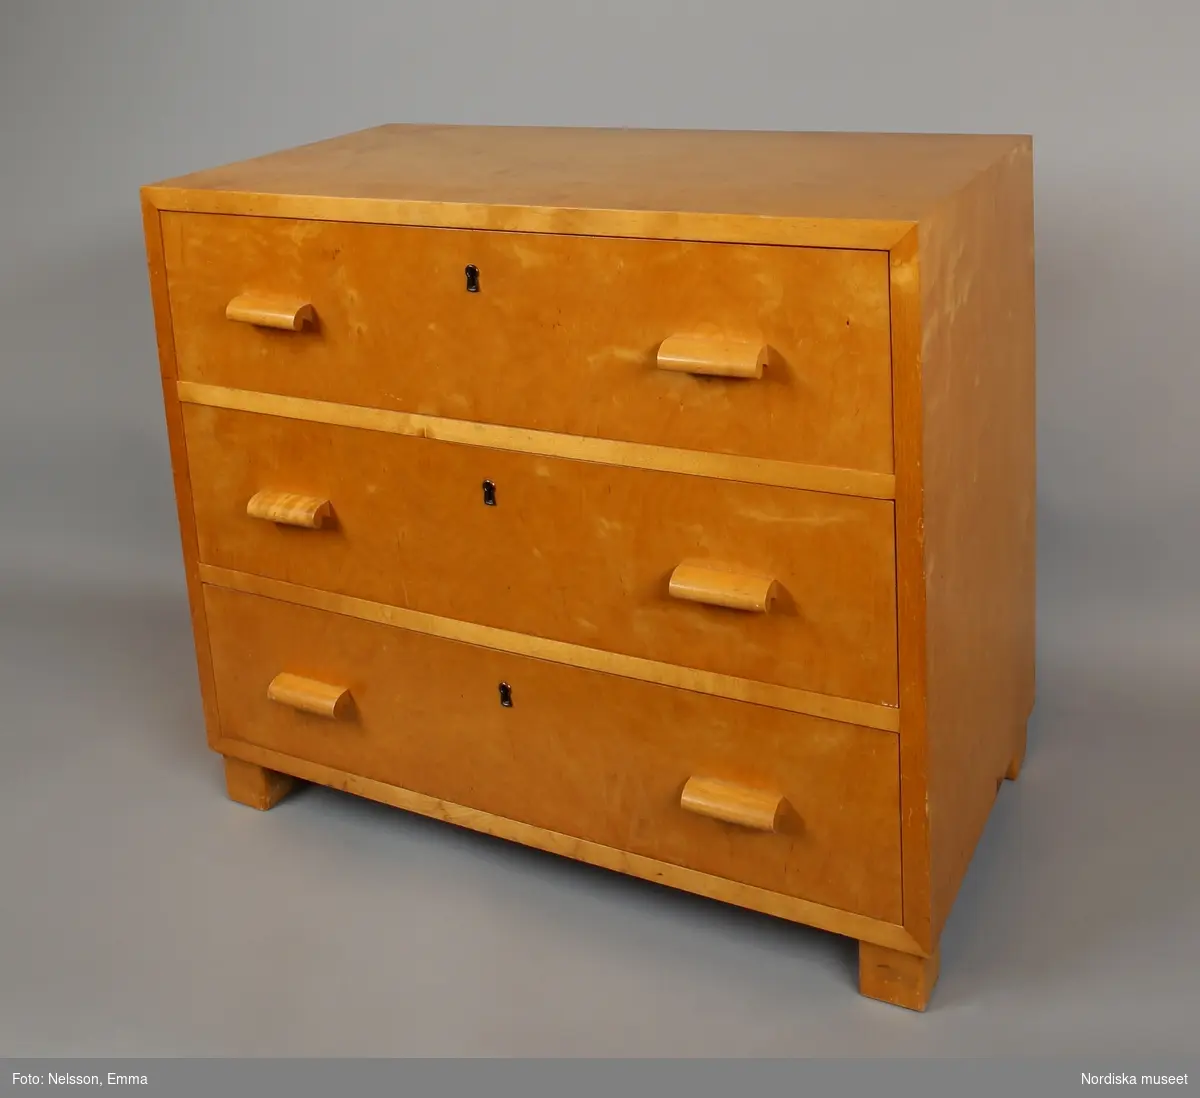 Byrå (A) med tre lådor (B:1-3),"funkis", 1930-40-tal, av ljust polerat trä, sannolikt björk. Rektangulär form på fyra klossformade fötter. Rygg av plywood, spikad. Draghandtag av trä. Instickslås. Nyckelbussningar av metall.
Anm: Lådorna försedda med röd- och vitmönstrat hyllpapper, fäst med häftstift.
/Anna Arfvidsson Womack 2021-08-16